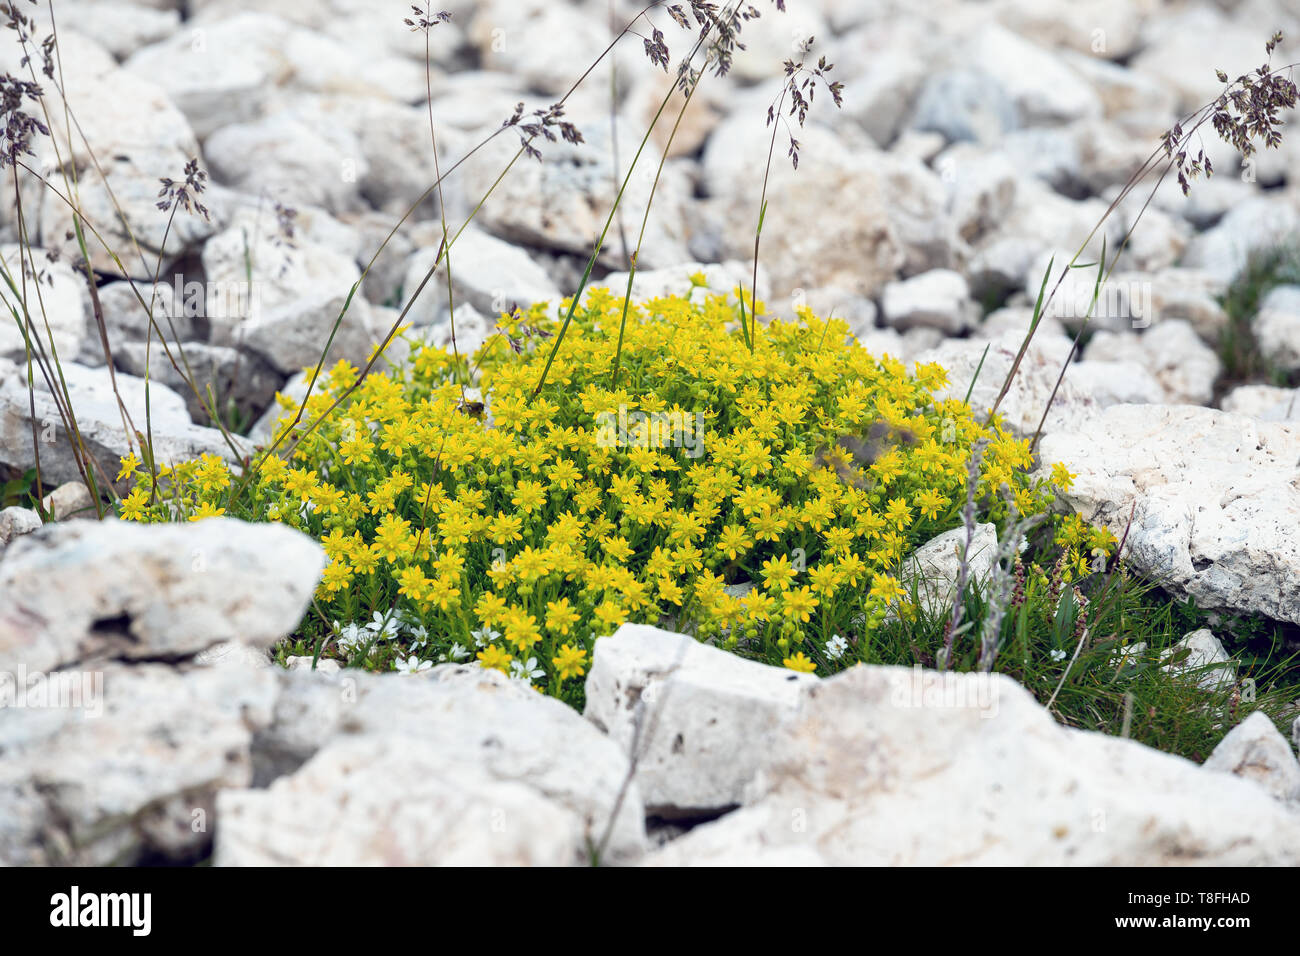 Saxifraga aizoides (yellow mountain saxifrage / yellow saxifrage) on limestone rocks. Mountain flowers. The Dolomites. Italian Alps. Stock Photo